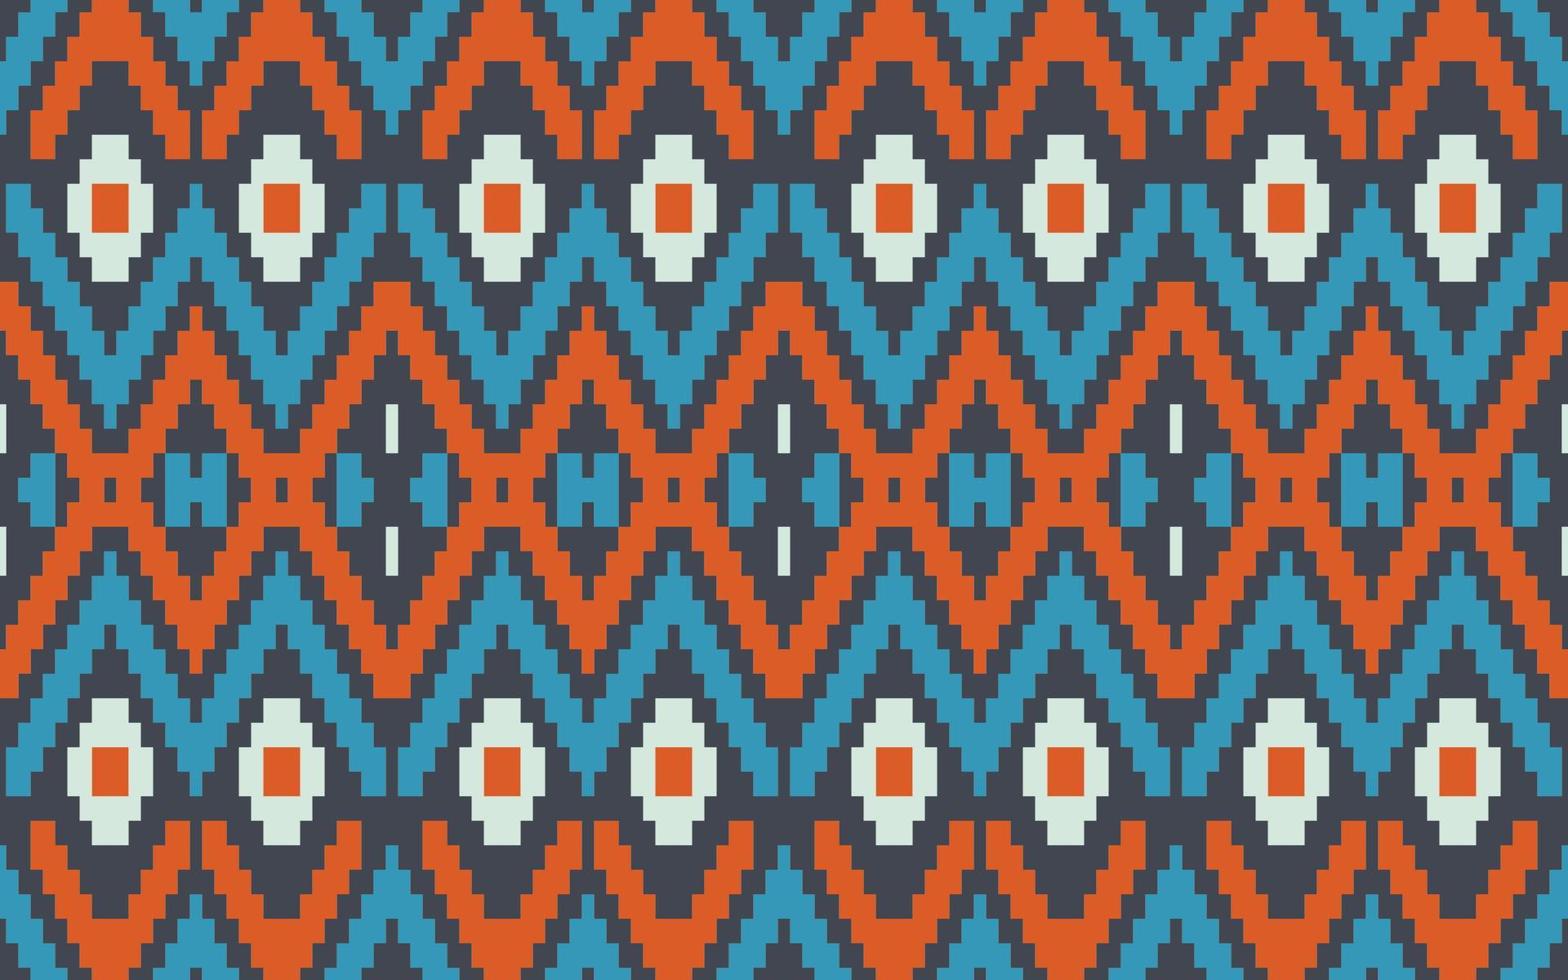 aztekische geometrische afrikanische muster stoff aus afrika navajo nation muster ornament traditionelle kunst mexikanisches kleid design für druck tapeten papier textur hintergrund kleid vektor